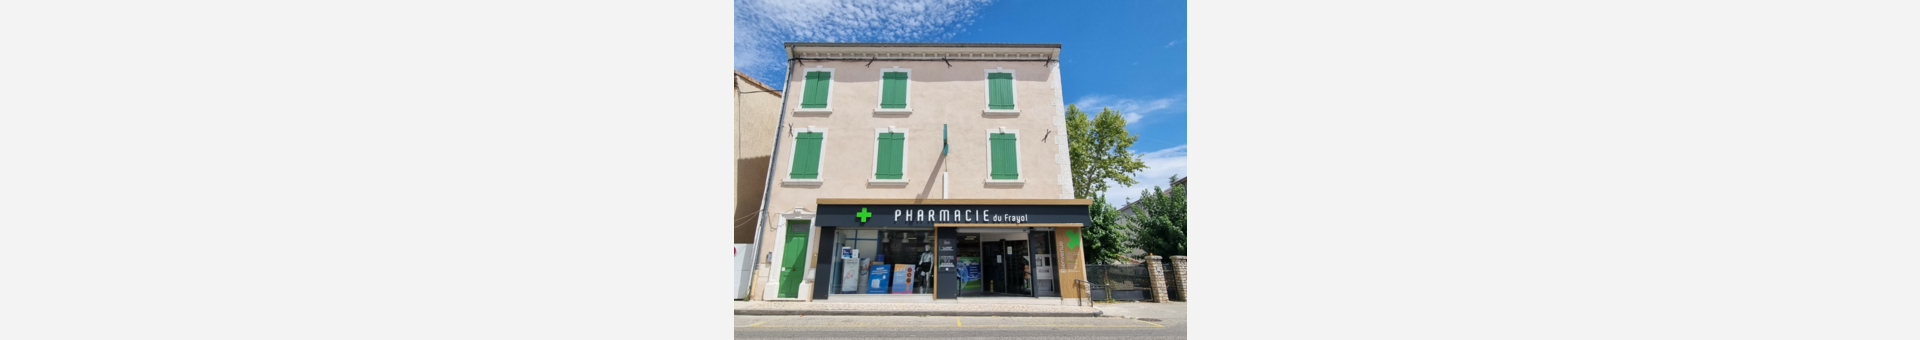 Pharmacie du Frayol,Le-Teil-D'Ardeche